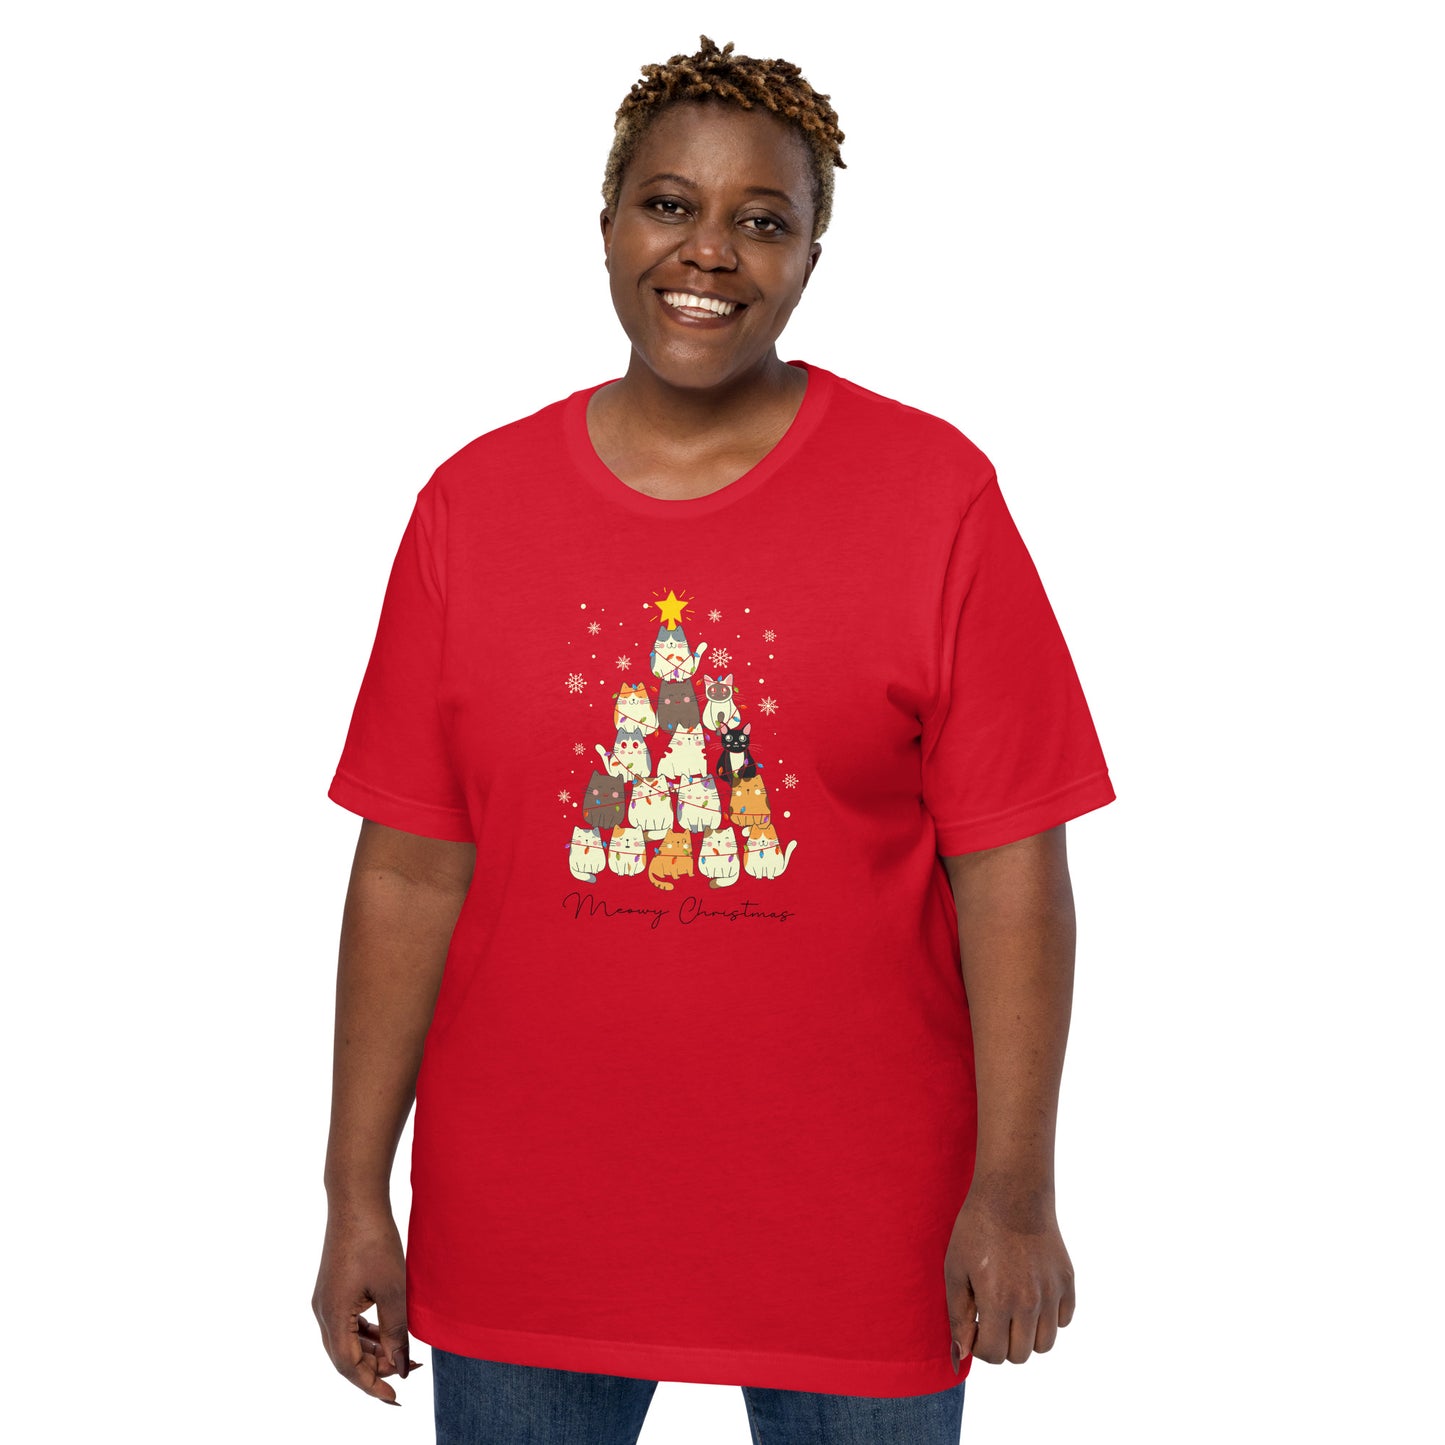 Meowy Christmas t-shirt